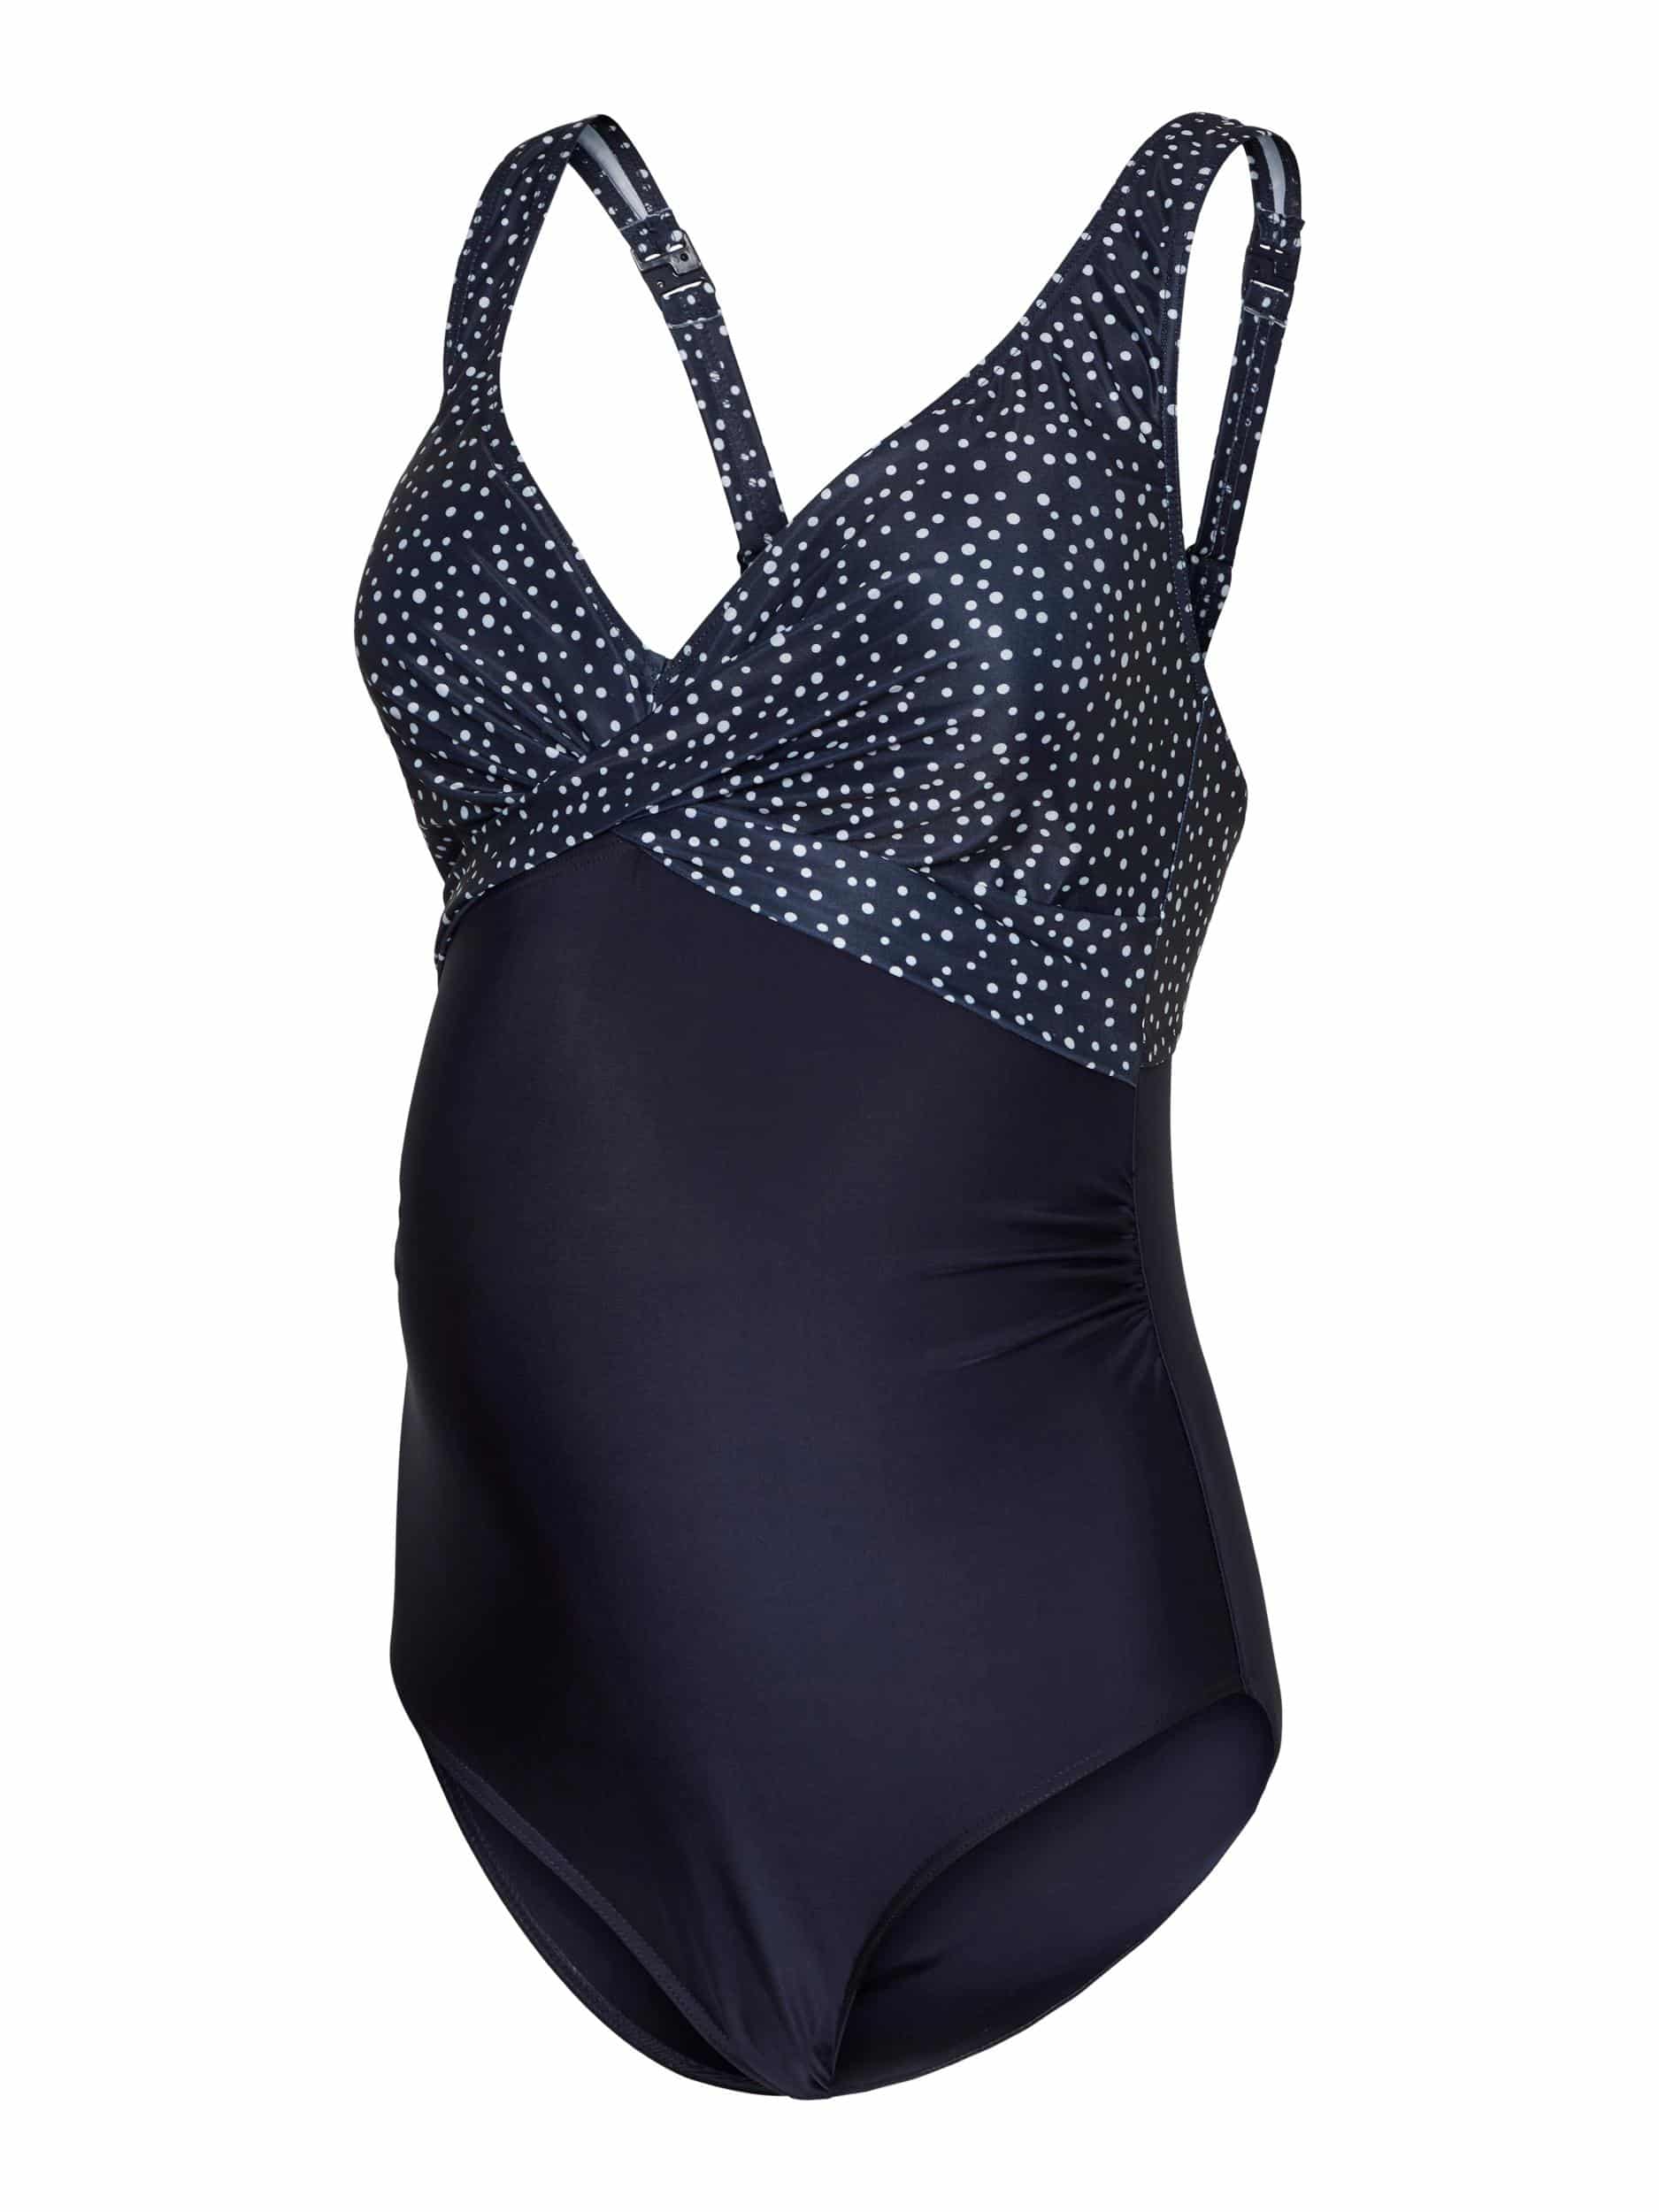 Fabulous Maternity Swimsuit Mamalicious Padded Dots 20017626